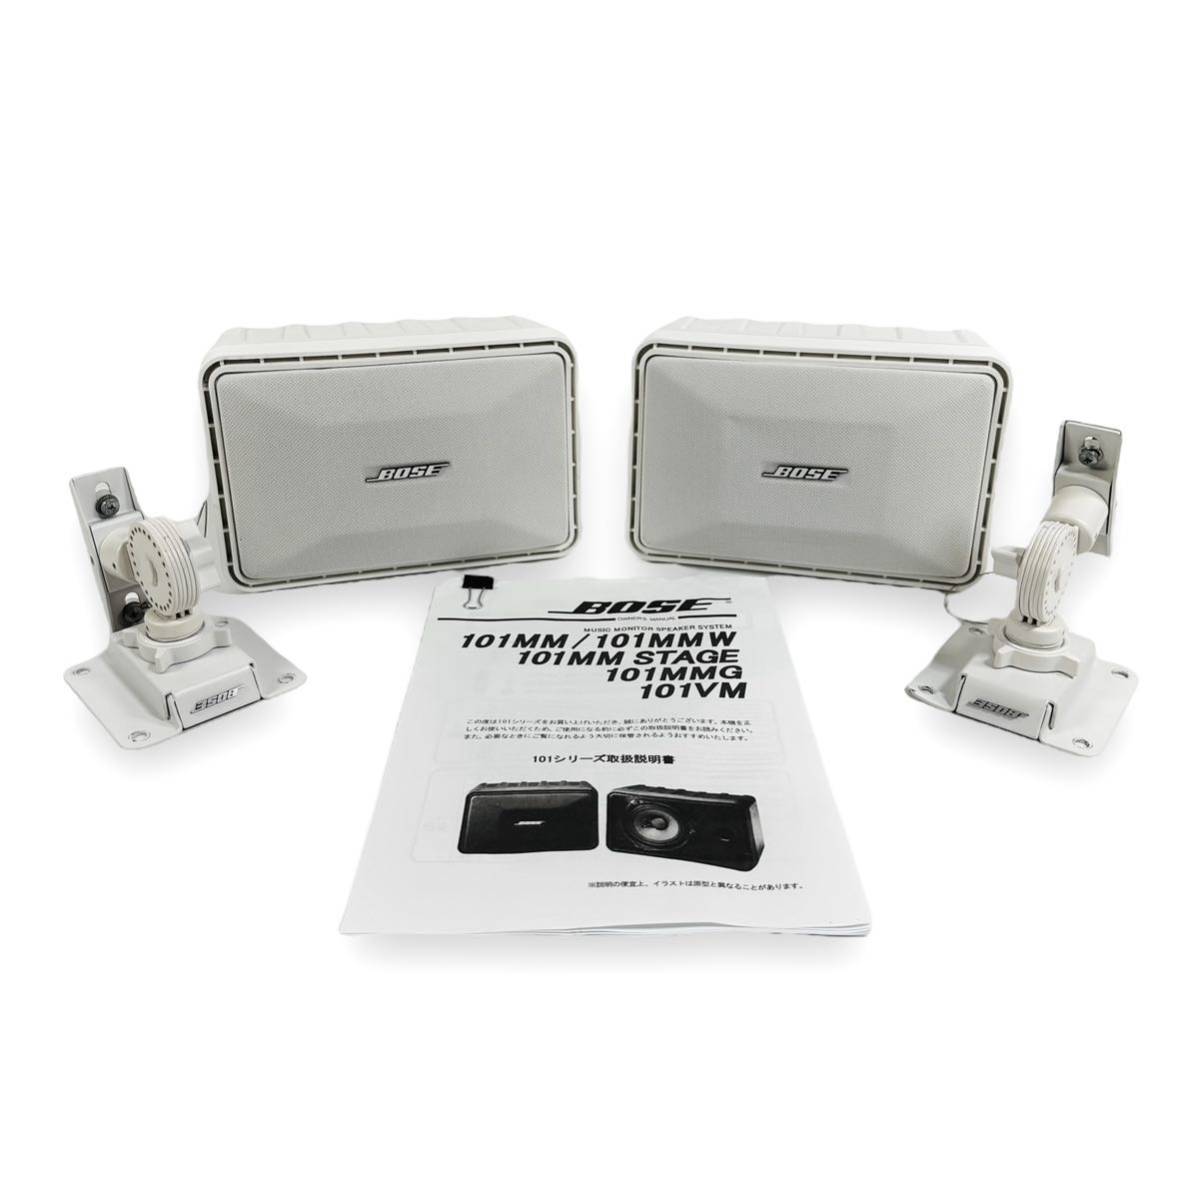 【純正取り付け金具付】Bose ボーズ 101MMW Model 101 Music Monitor system スピーカー システムスピーカー  ホワイト連番 4060261 4060262